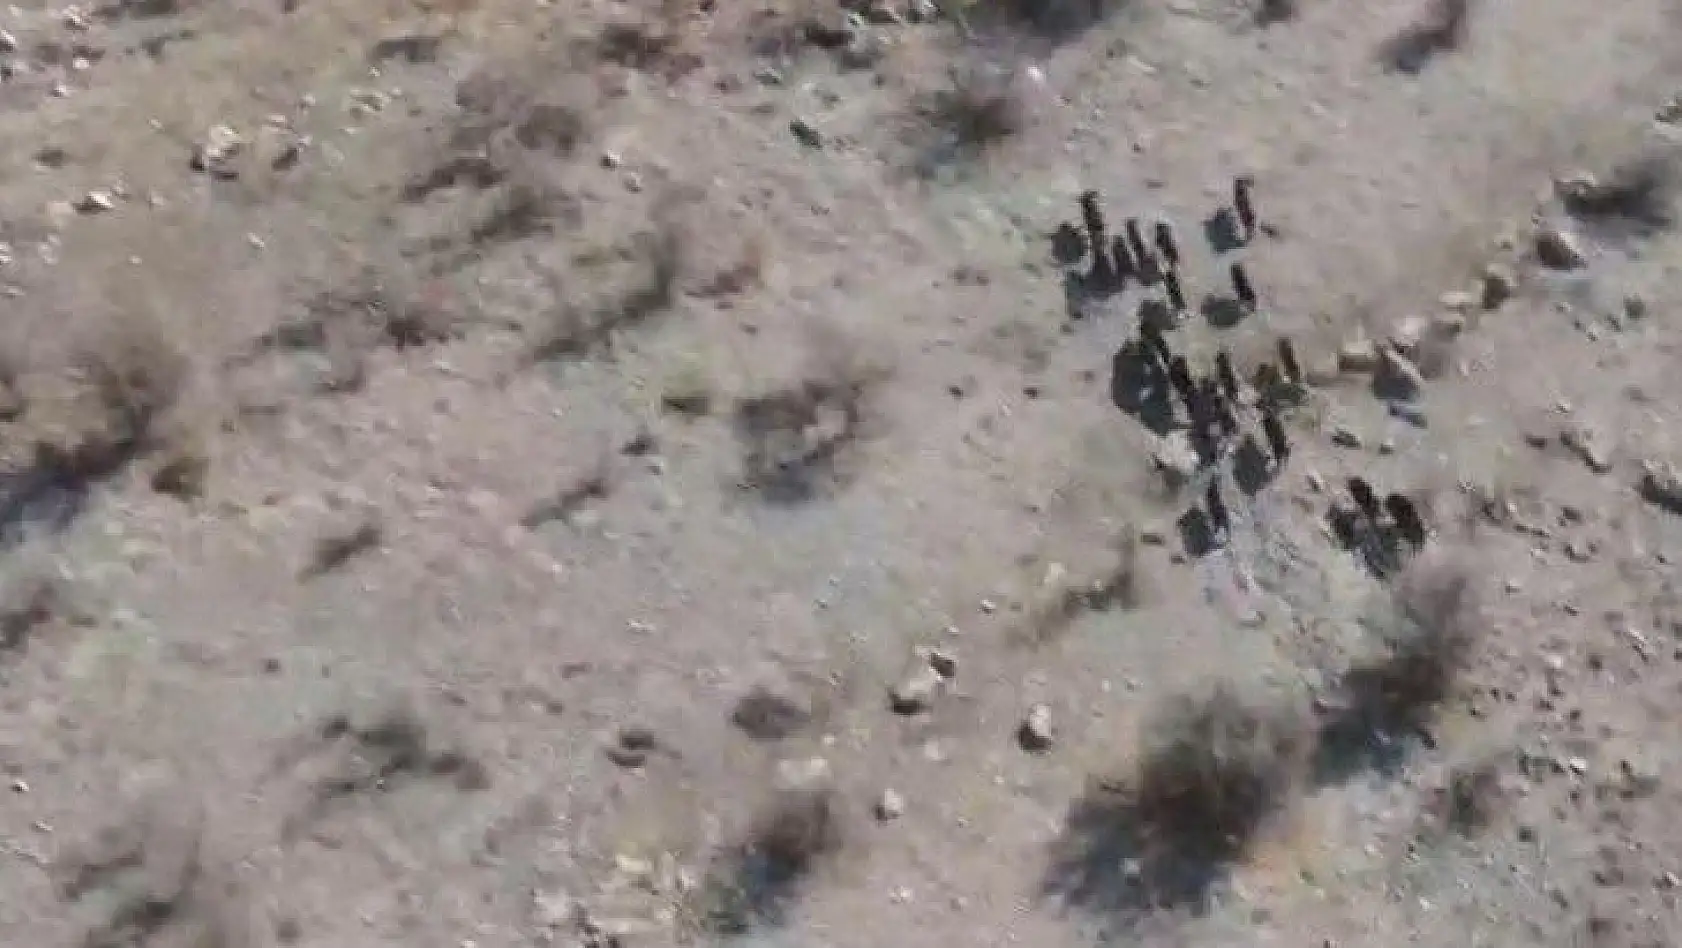 Elazığ'da domuz sürüsü drone ile görüntülendi